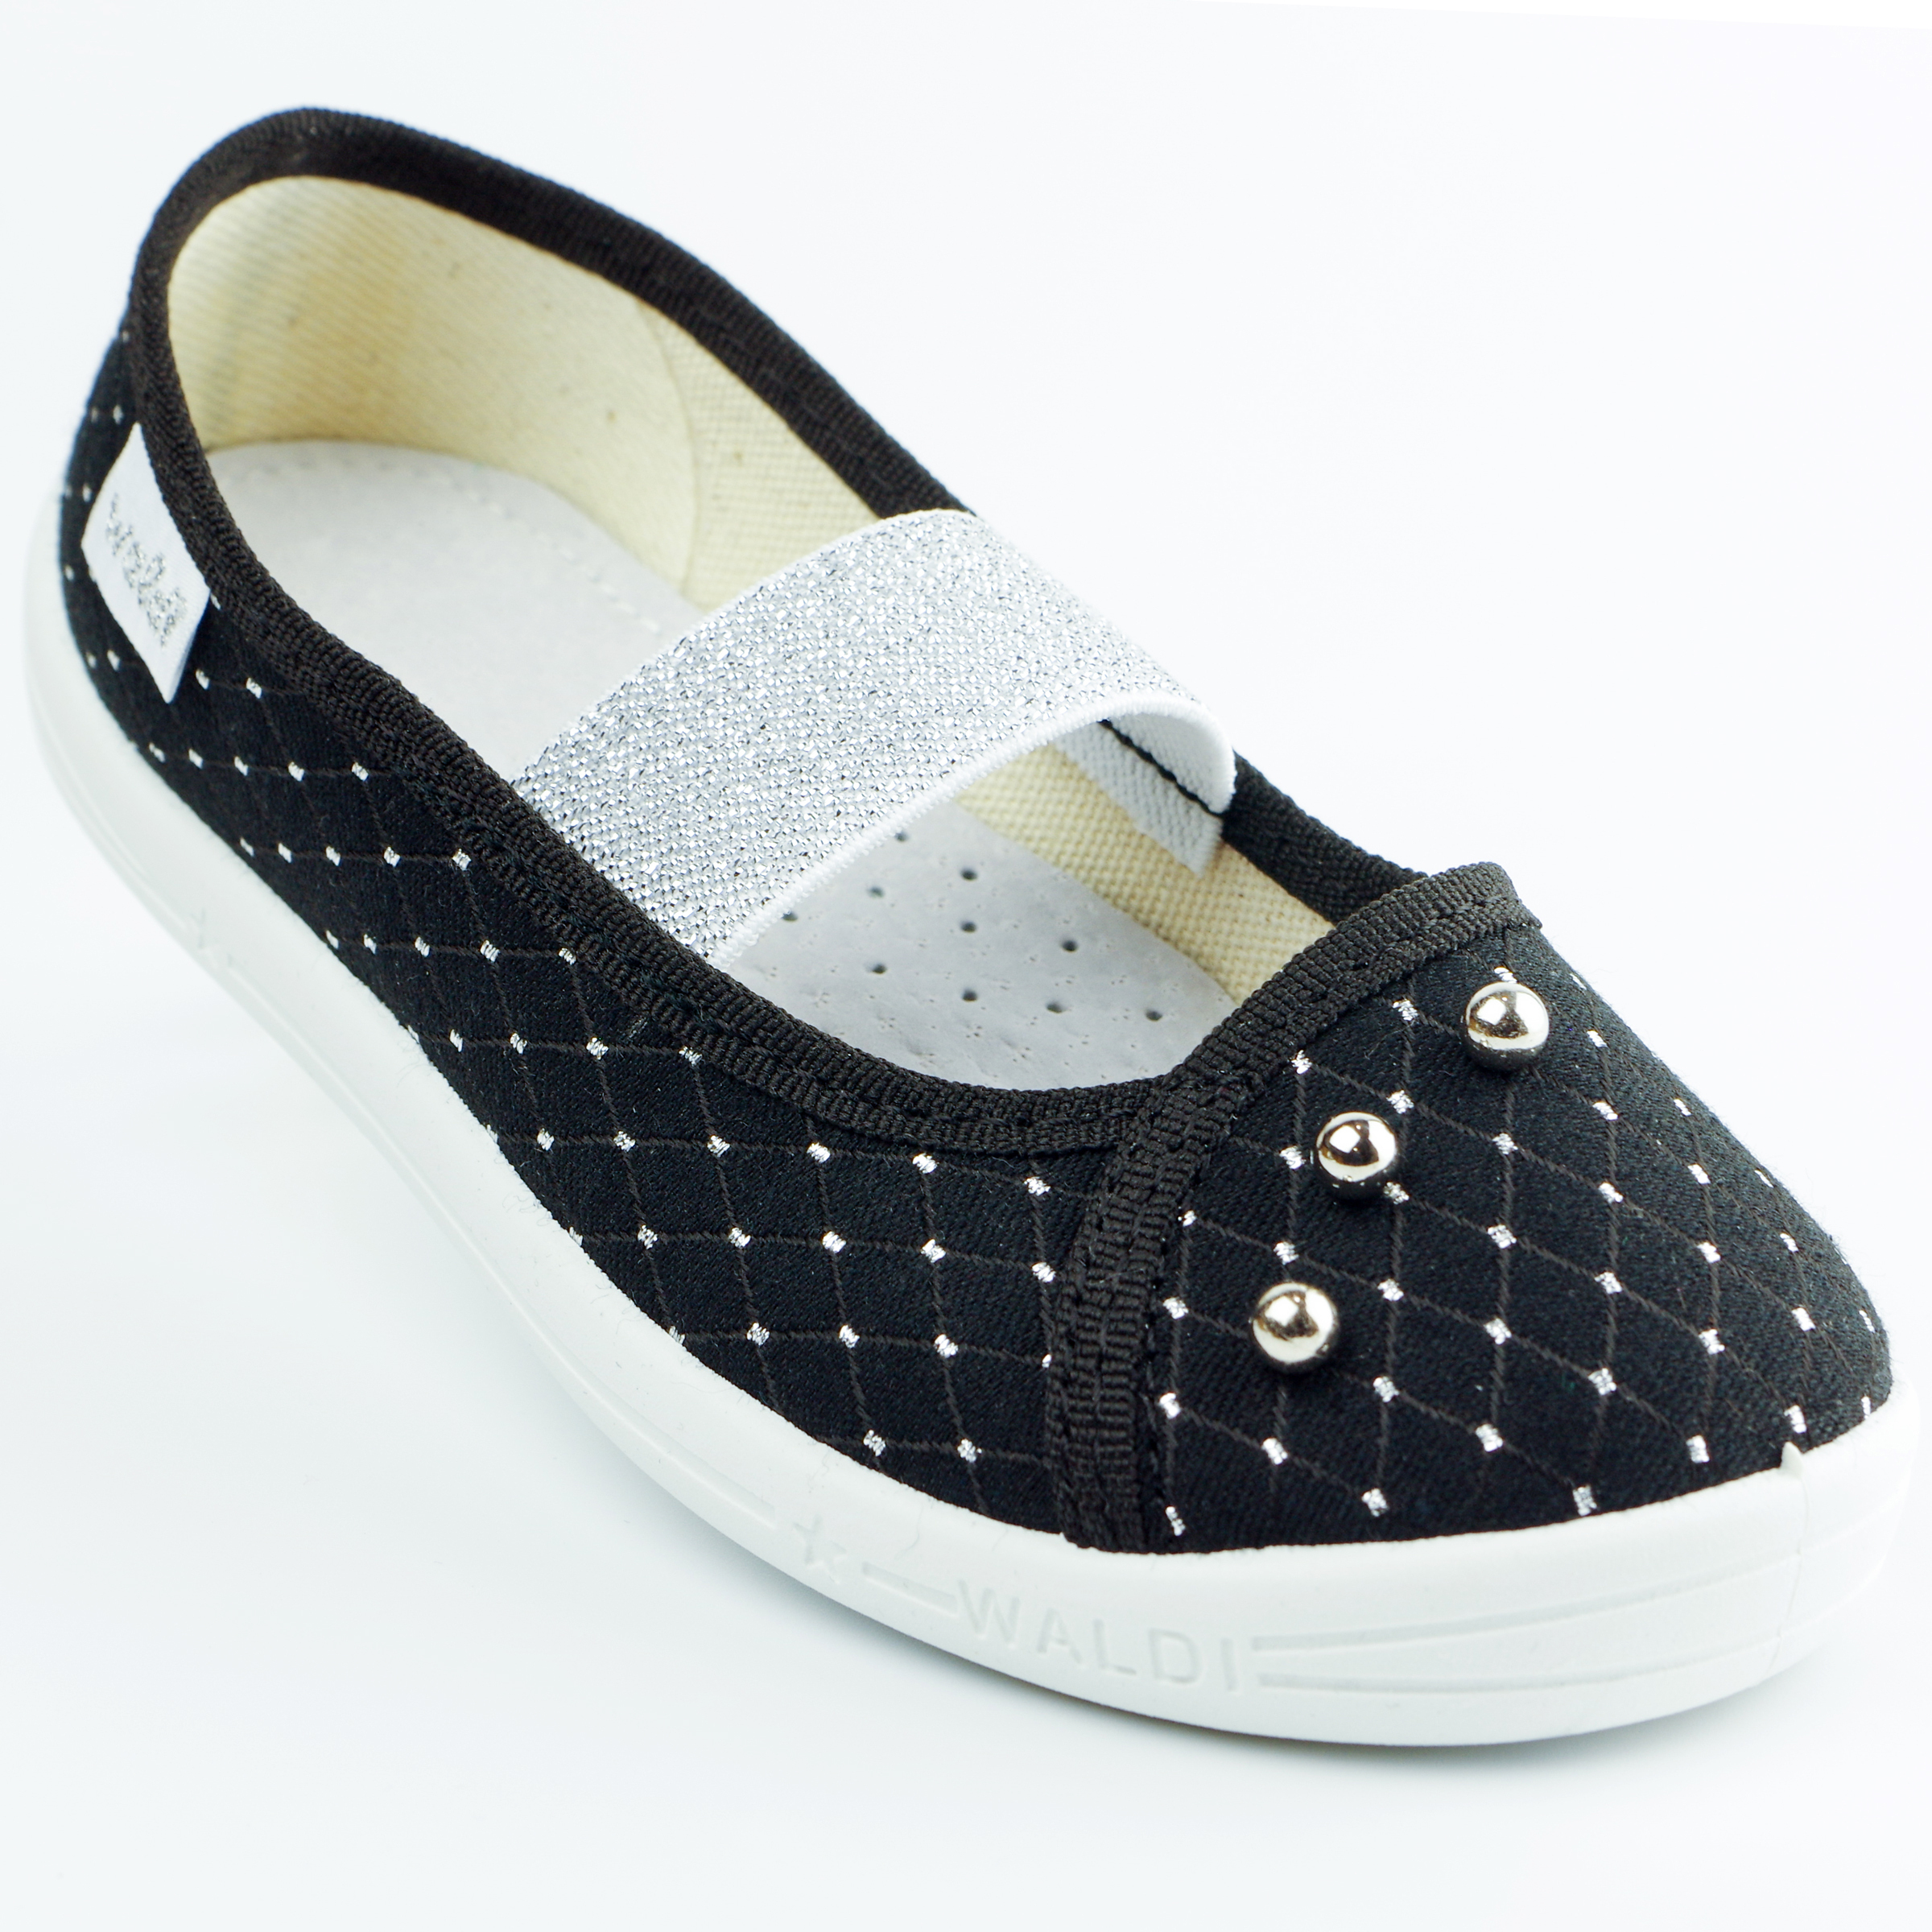 Текстильная обувь для девочек Тапочки Жемчужина (2129) цвет Черный 27-34 размеры – Sole Kids. Фото 1